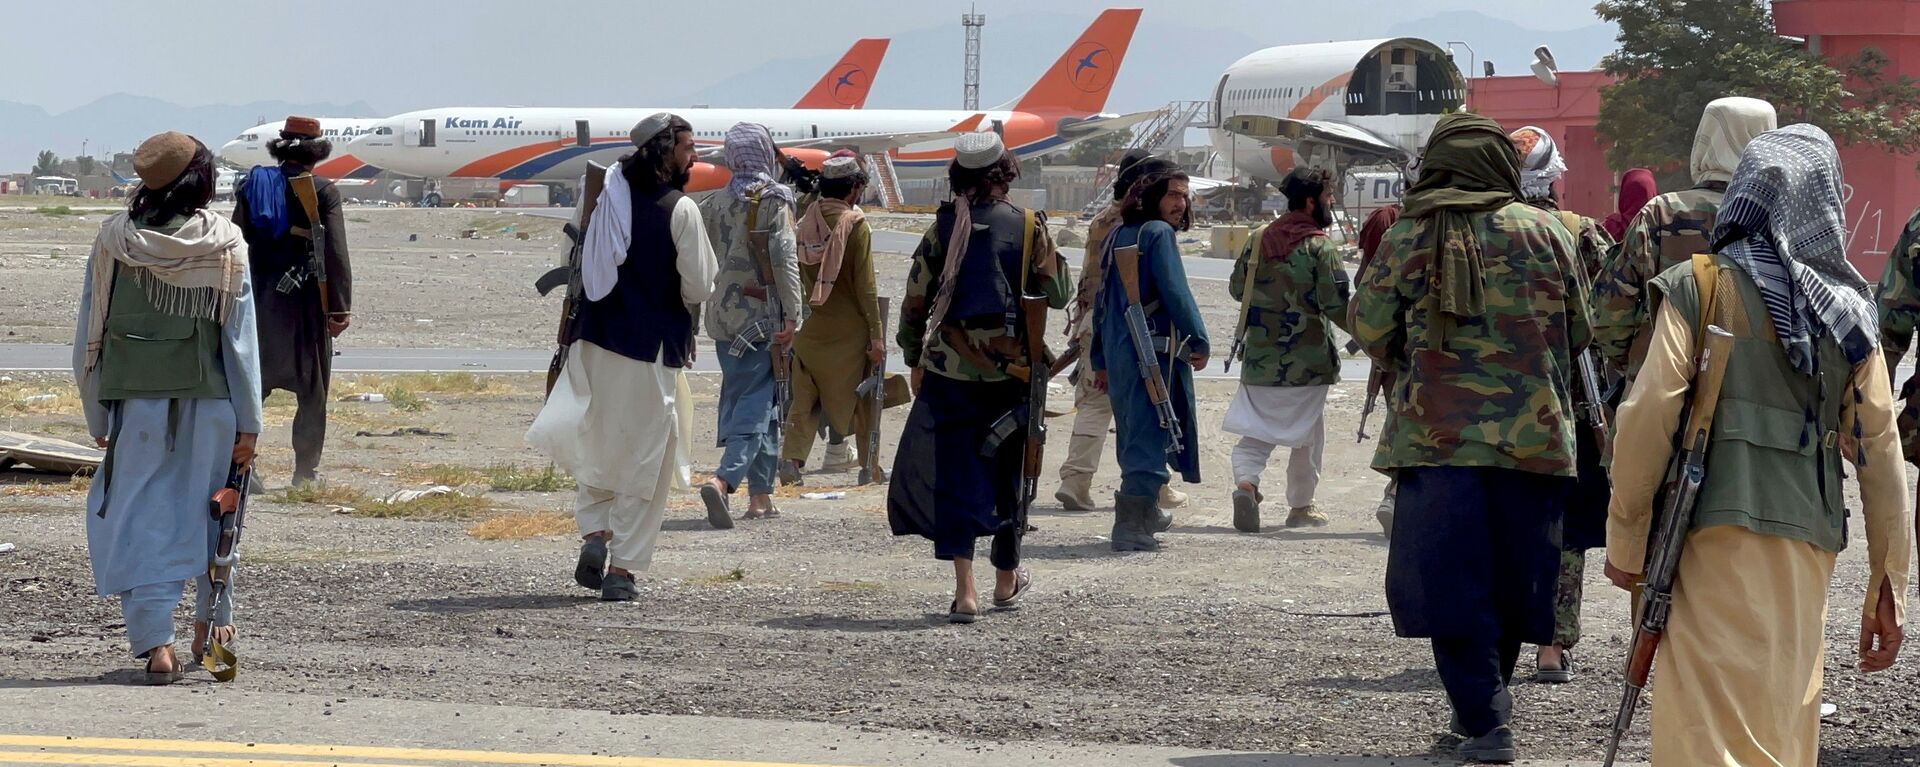 عناصر حركة طالبان تسيطر على مطار حامد كرزاي الدولي في كابول، أفغانستان 31 أغسطس 2021 - سبوتنيك عربي, 1920, 11.09.2021